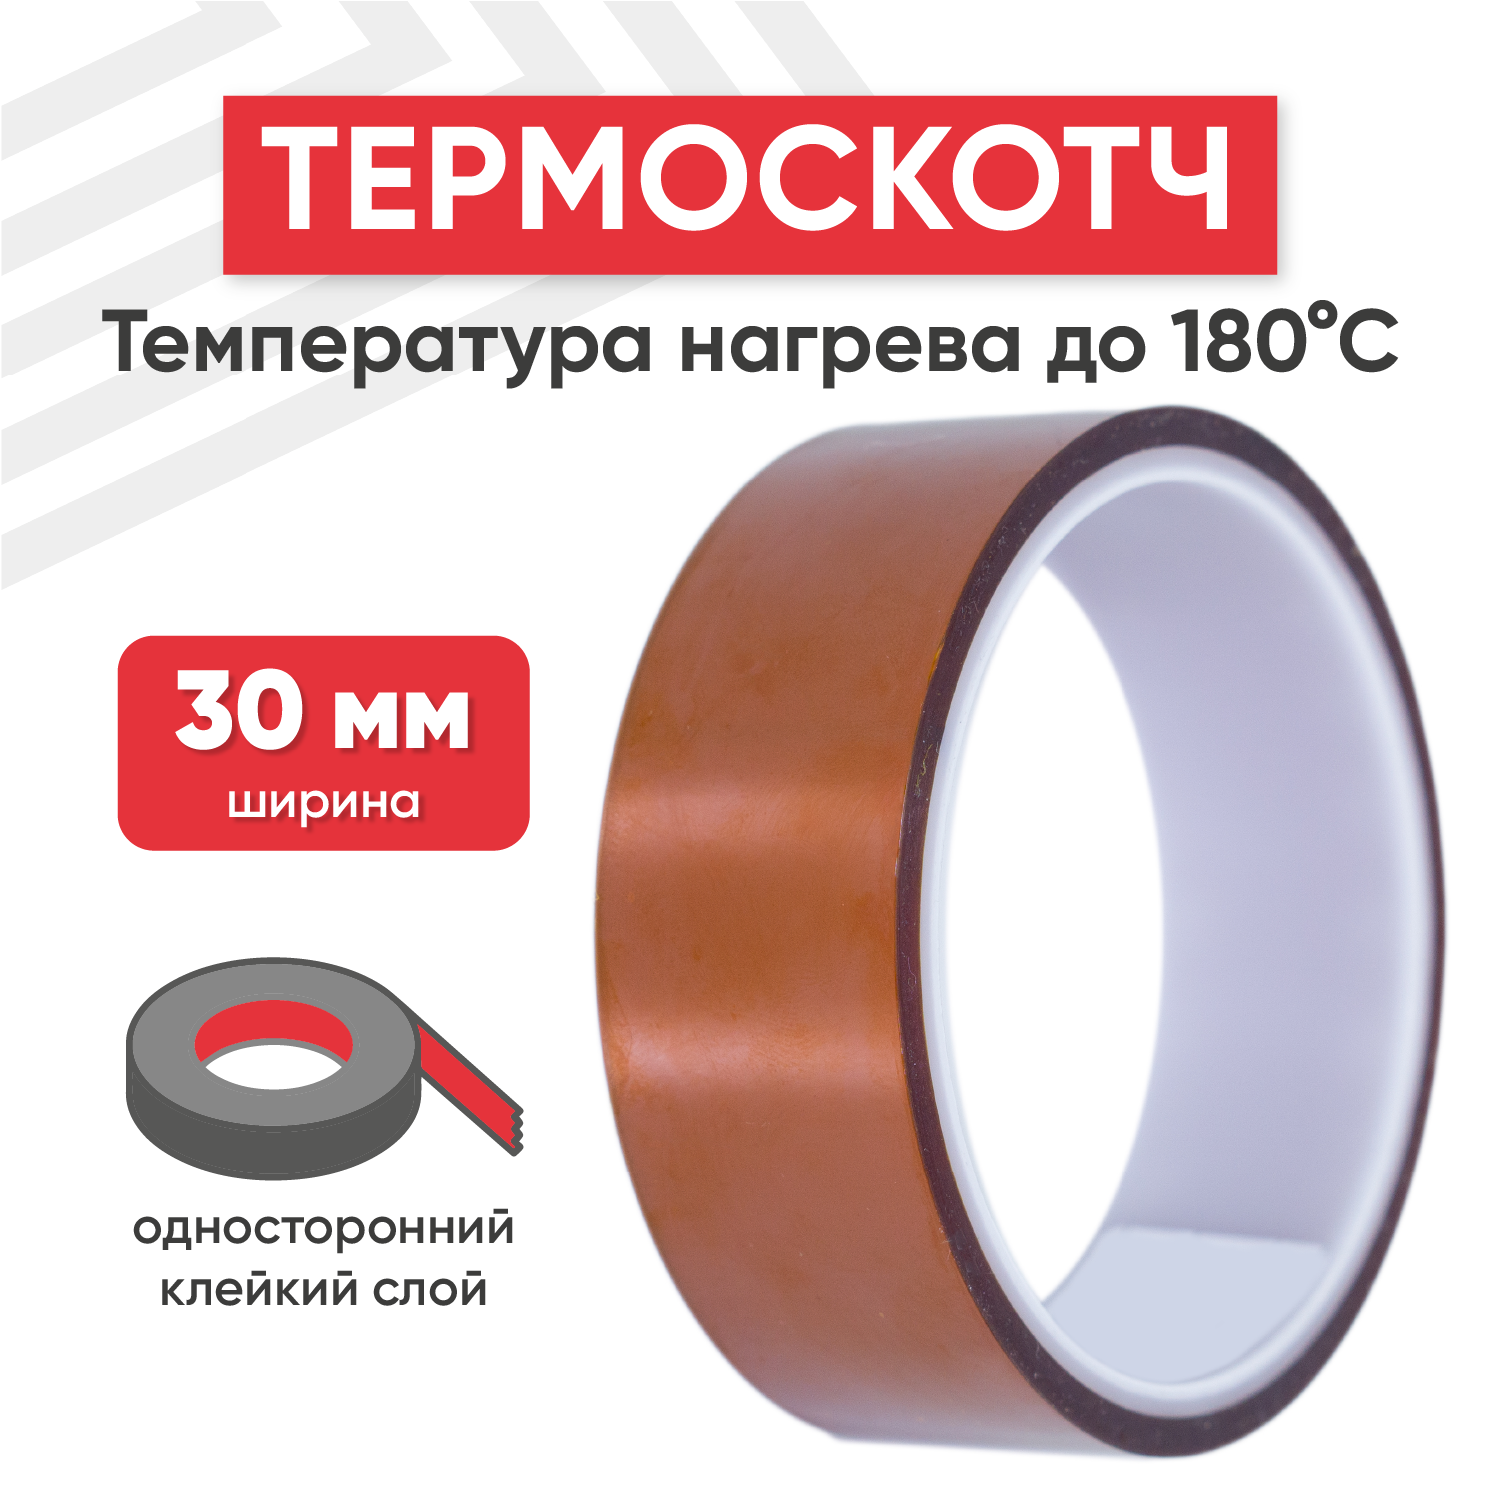 Термостойкая клейкая лента (термоскотч) нагрев до 180 градусов Цельсия